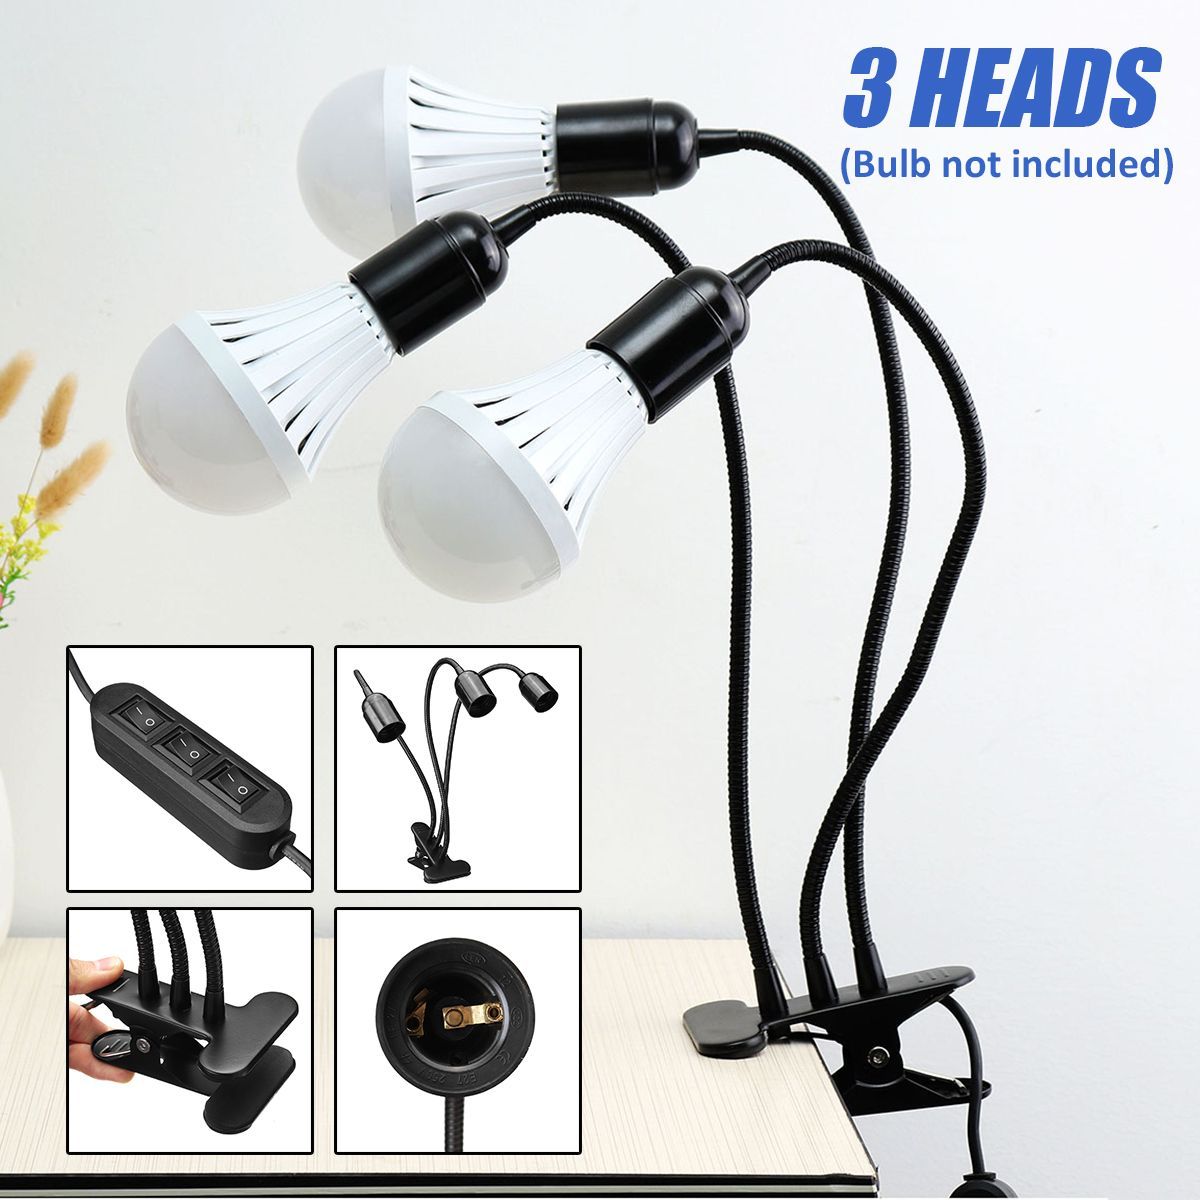 AC220V-3-Heads-Flexible-E27-Clip-On-Desk-Light-Lamp-Stand-Holder-Gooseneck-Bulb-Adapter-US-Plug-1410607